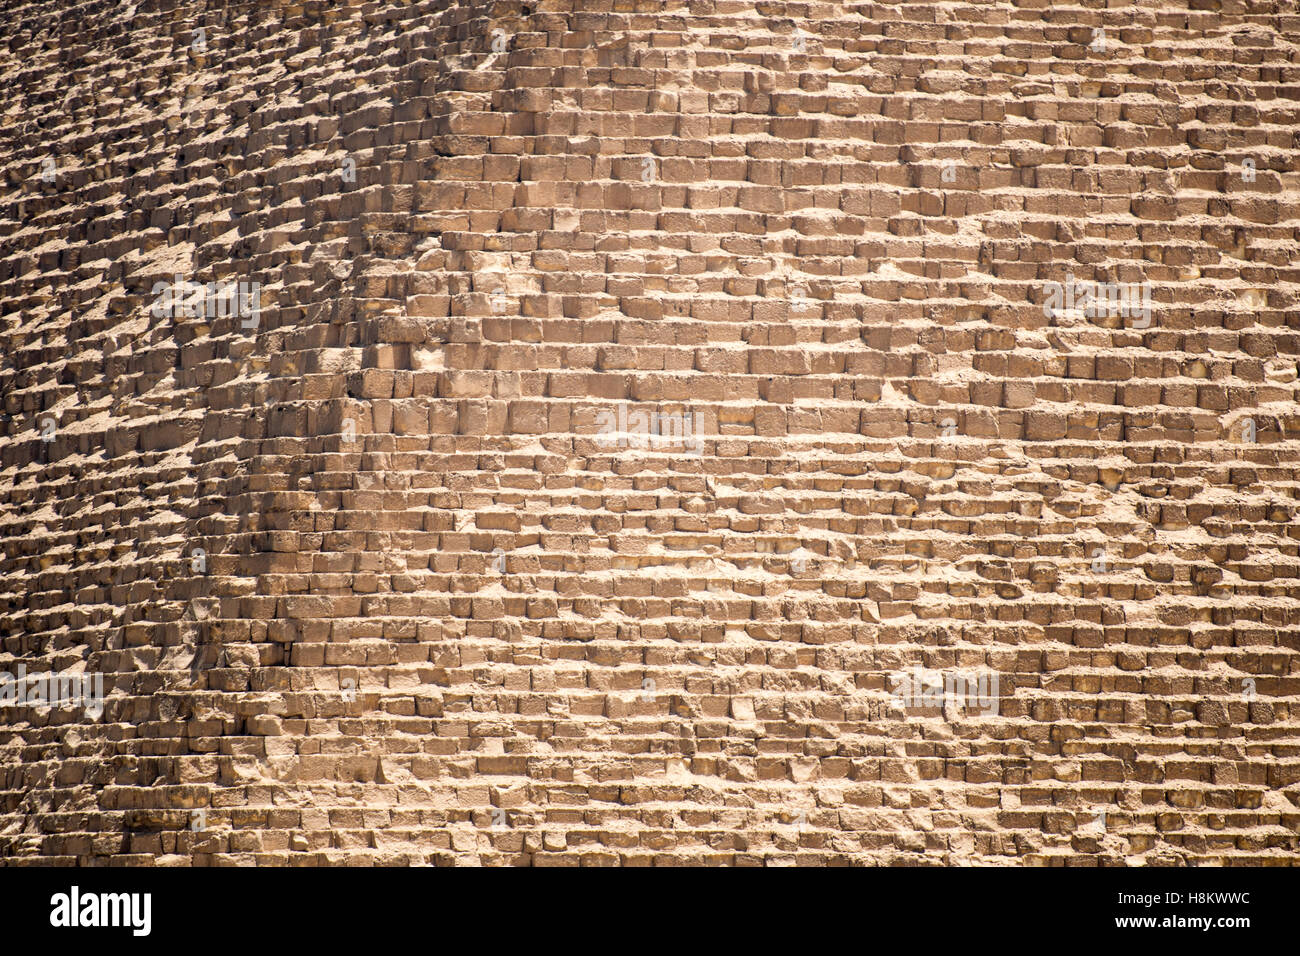 Le Caire, Égypte. Vue rapprochée de l'enveloppe des pierres (calcaire) qui composent les grandes pyramides de Gizeh. Banque D'Images